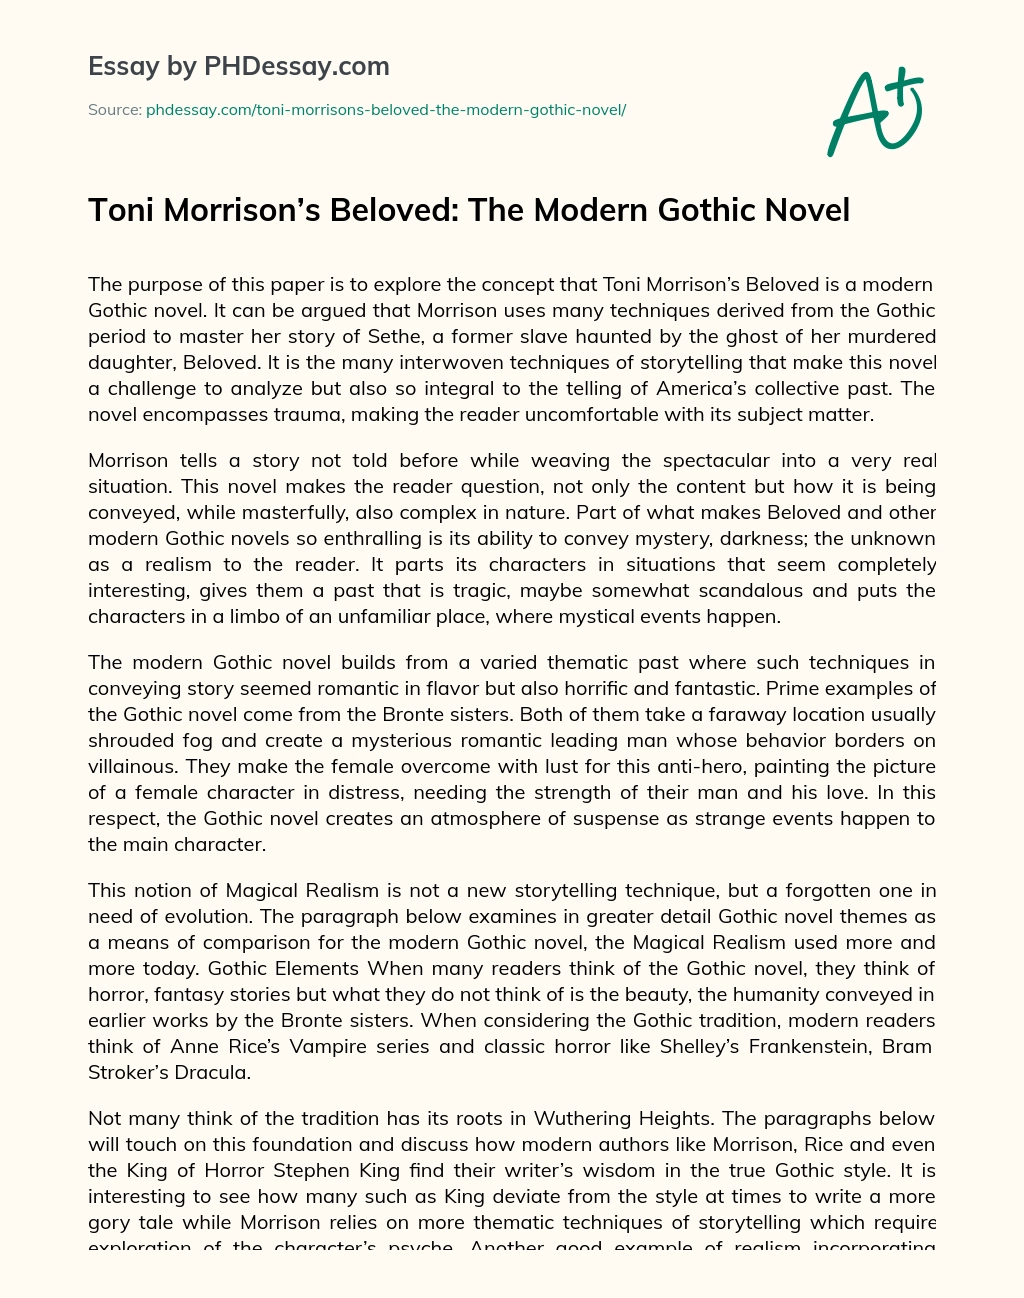 Toni Morrison’s Beloved: The Modern Gothic Novel essay